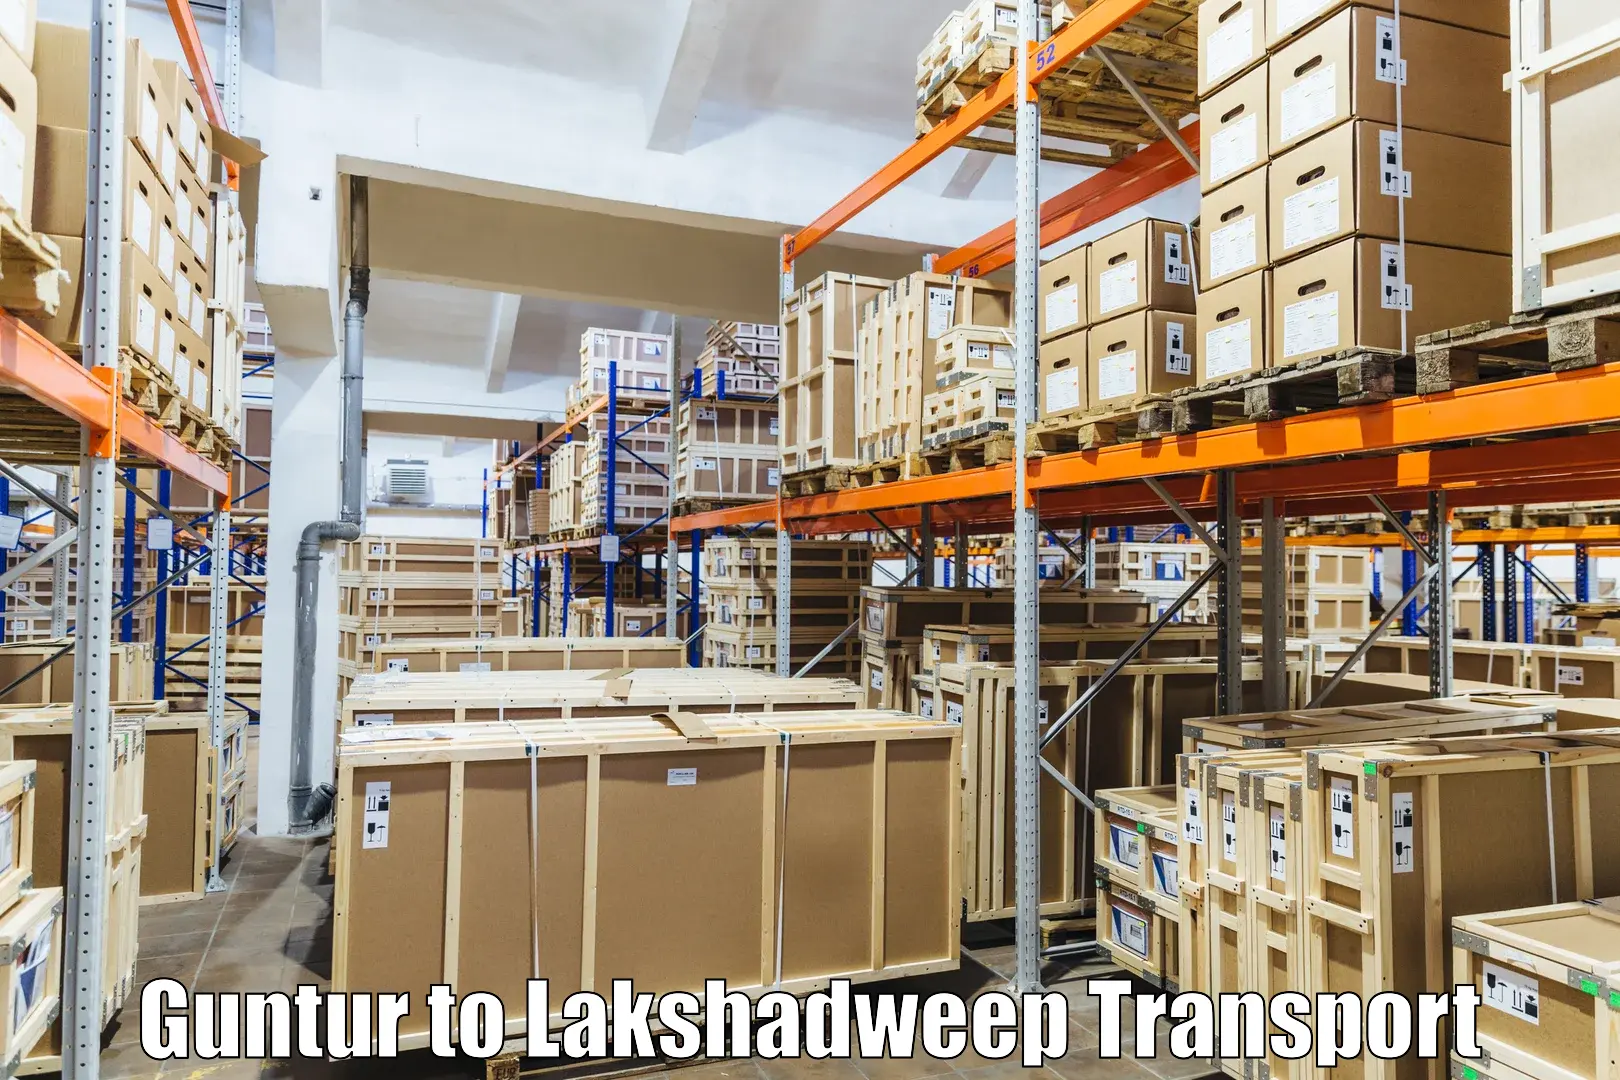 Cargo transportation services Guntur to Lakshadweep